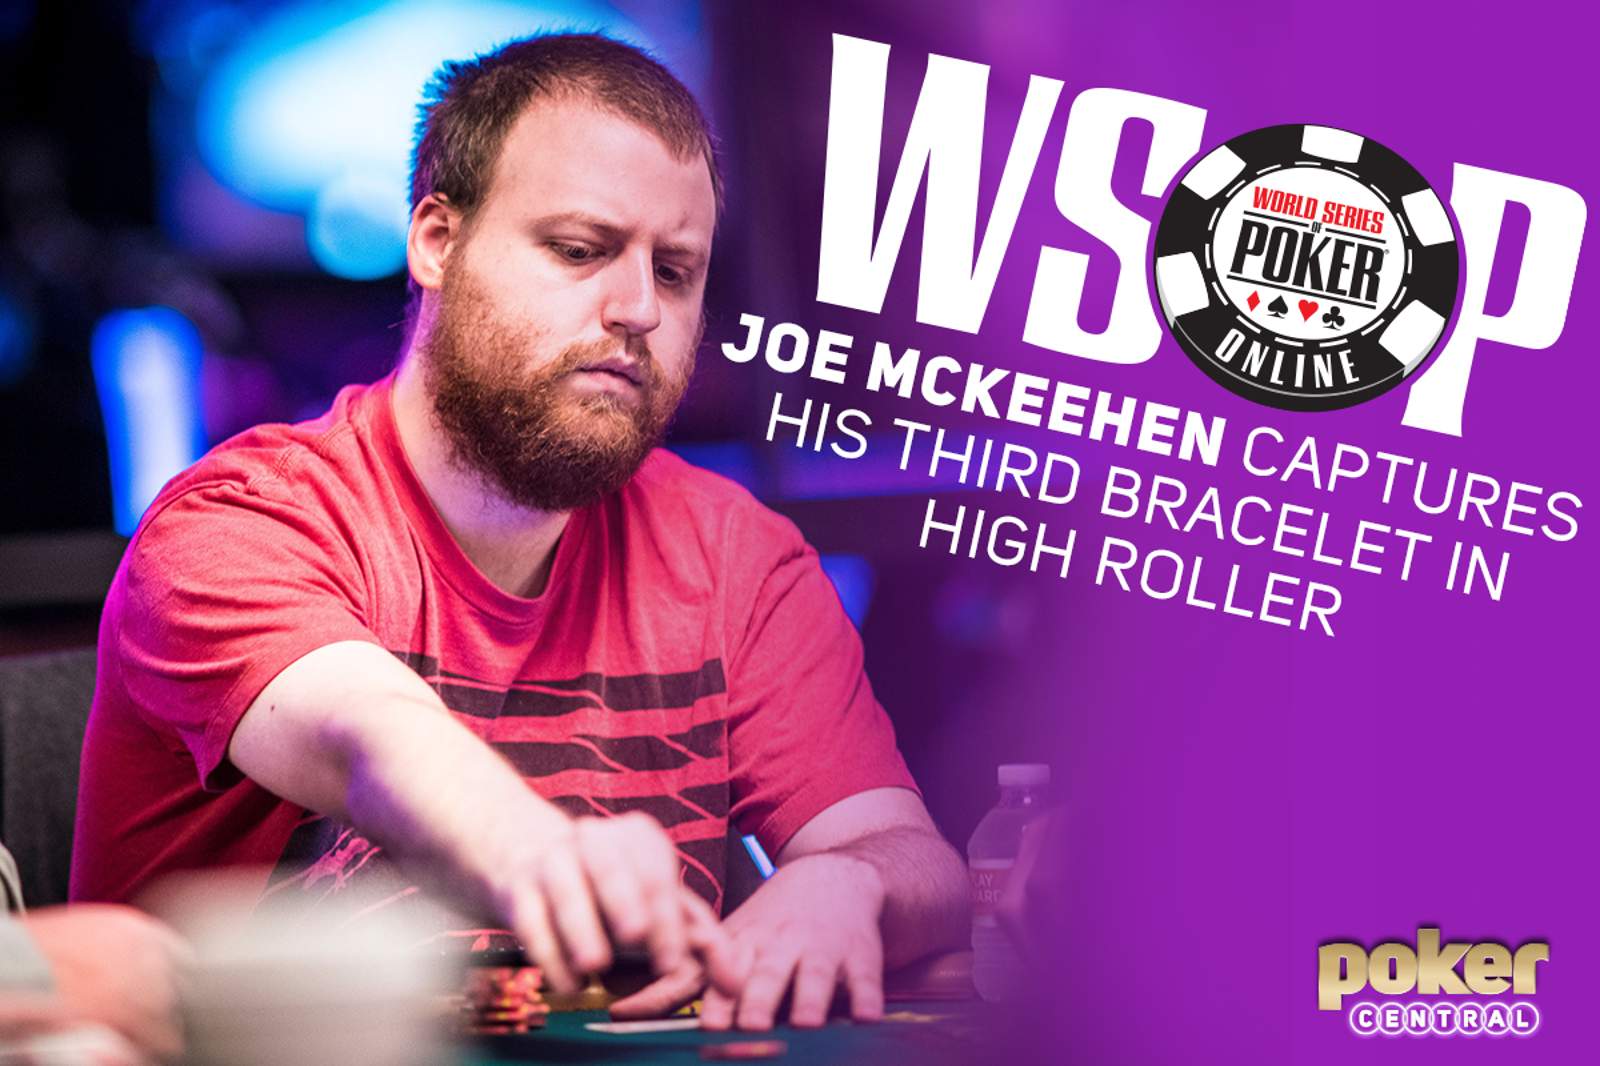 Joe McKeehen Captures Third WSOP Bracelet with WSOP Online High Roller Win for $352,985